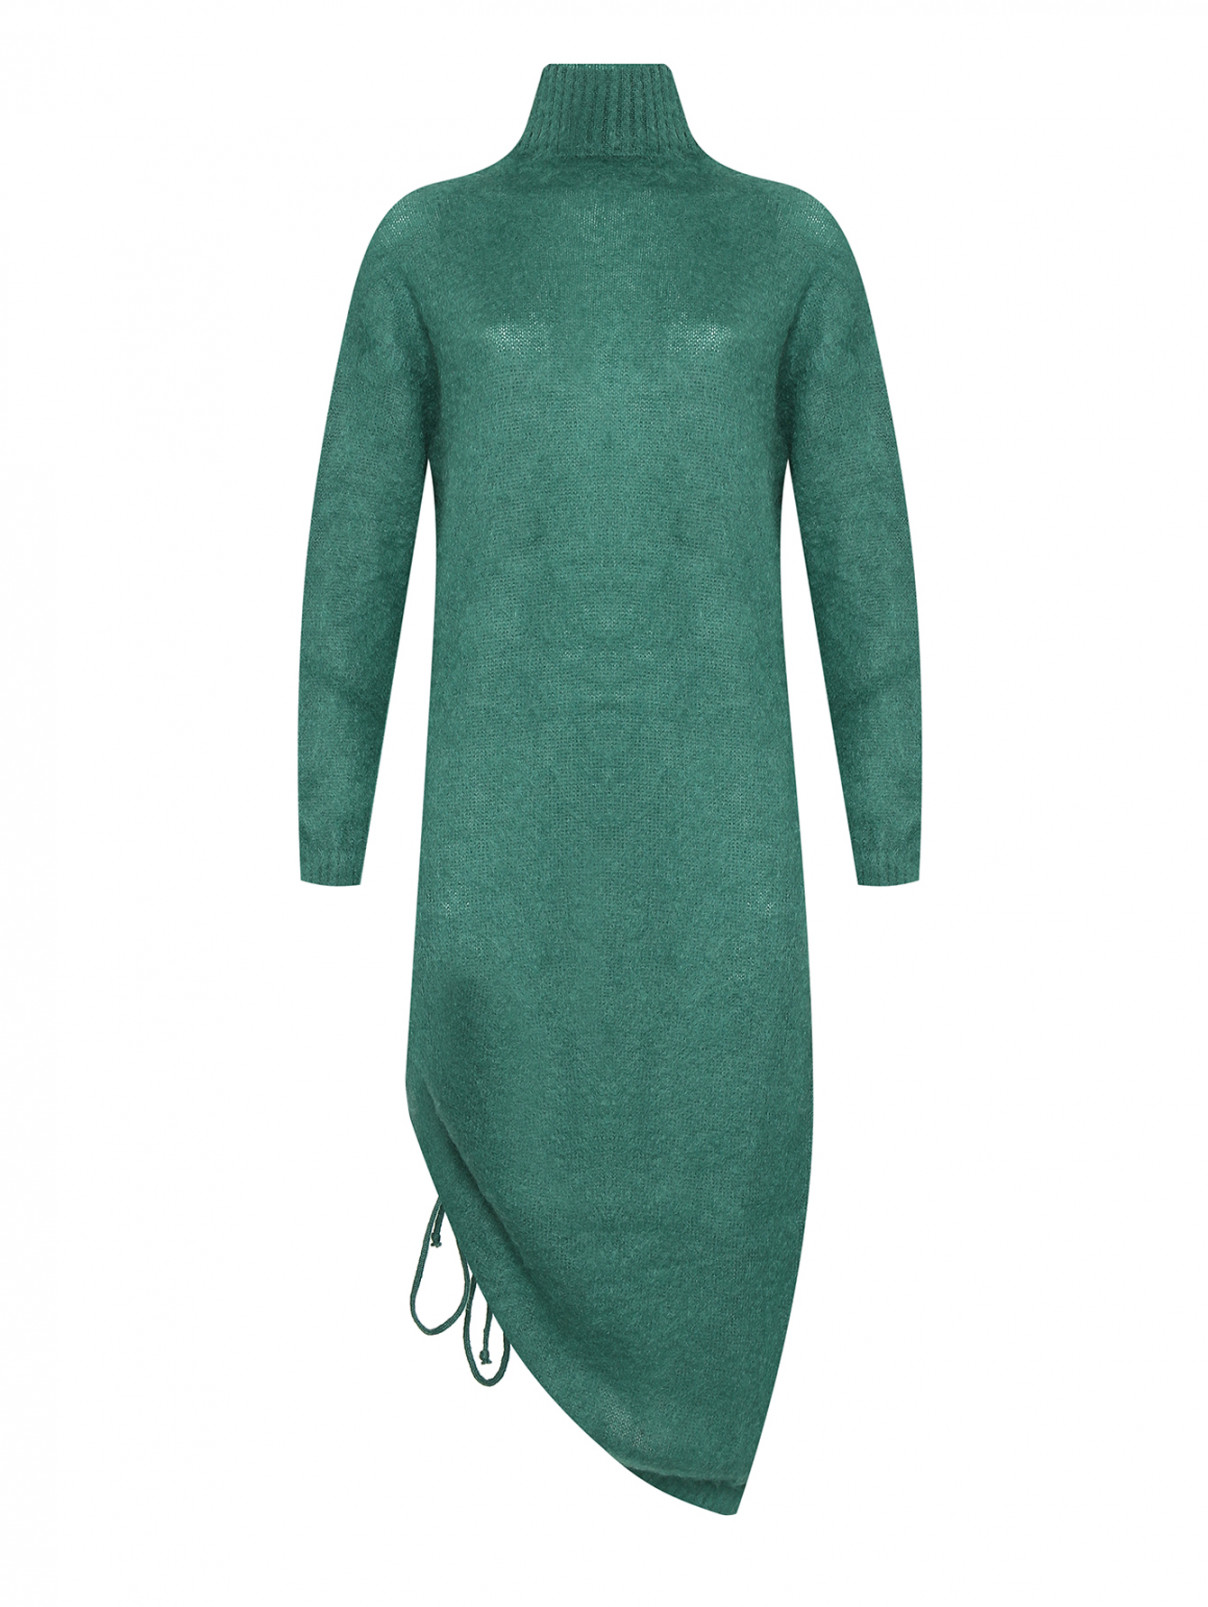 Трикотажное платье с открытой спиной Semicouture  –  Общий вид  – Цвет:  Зеленый